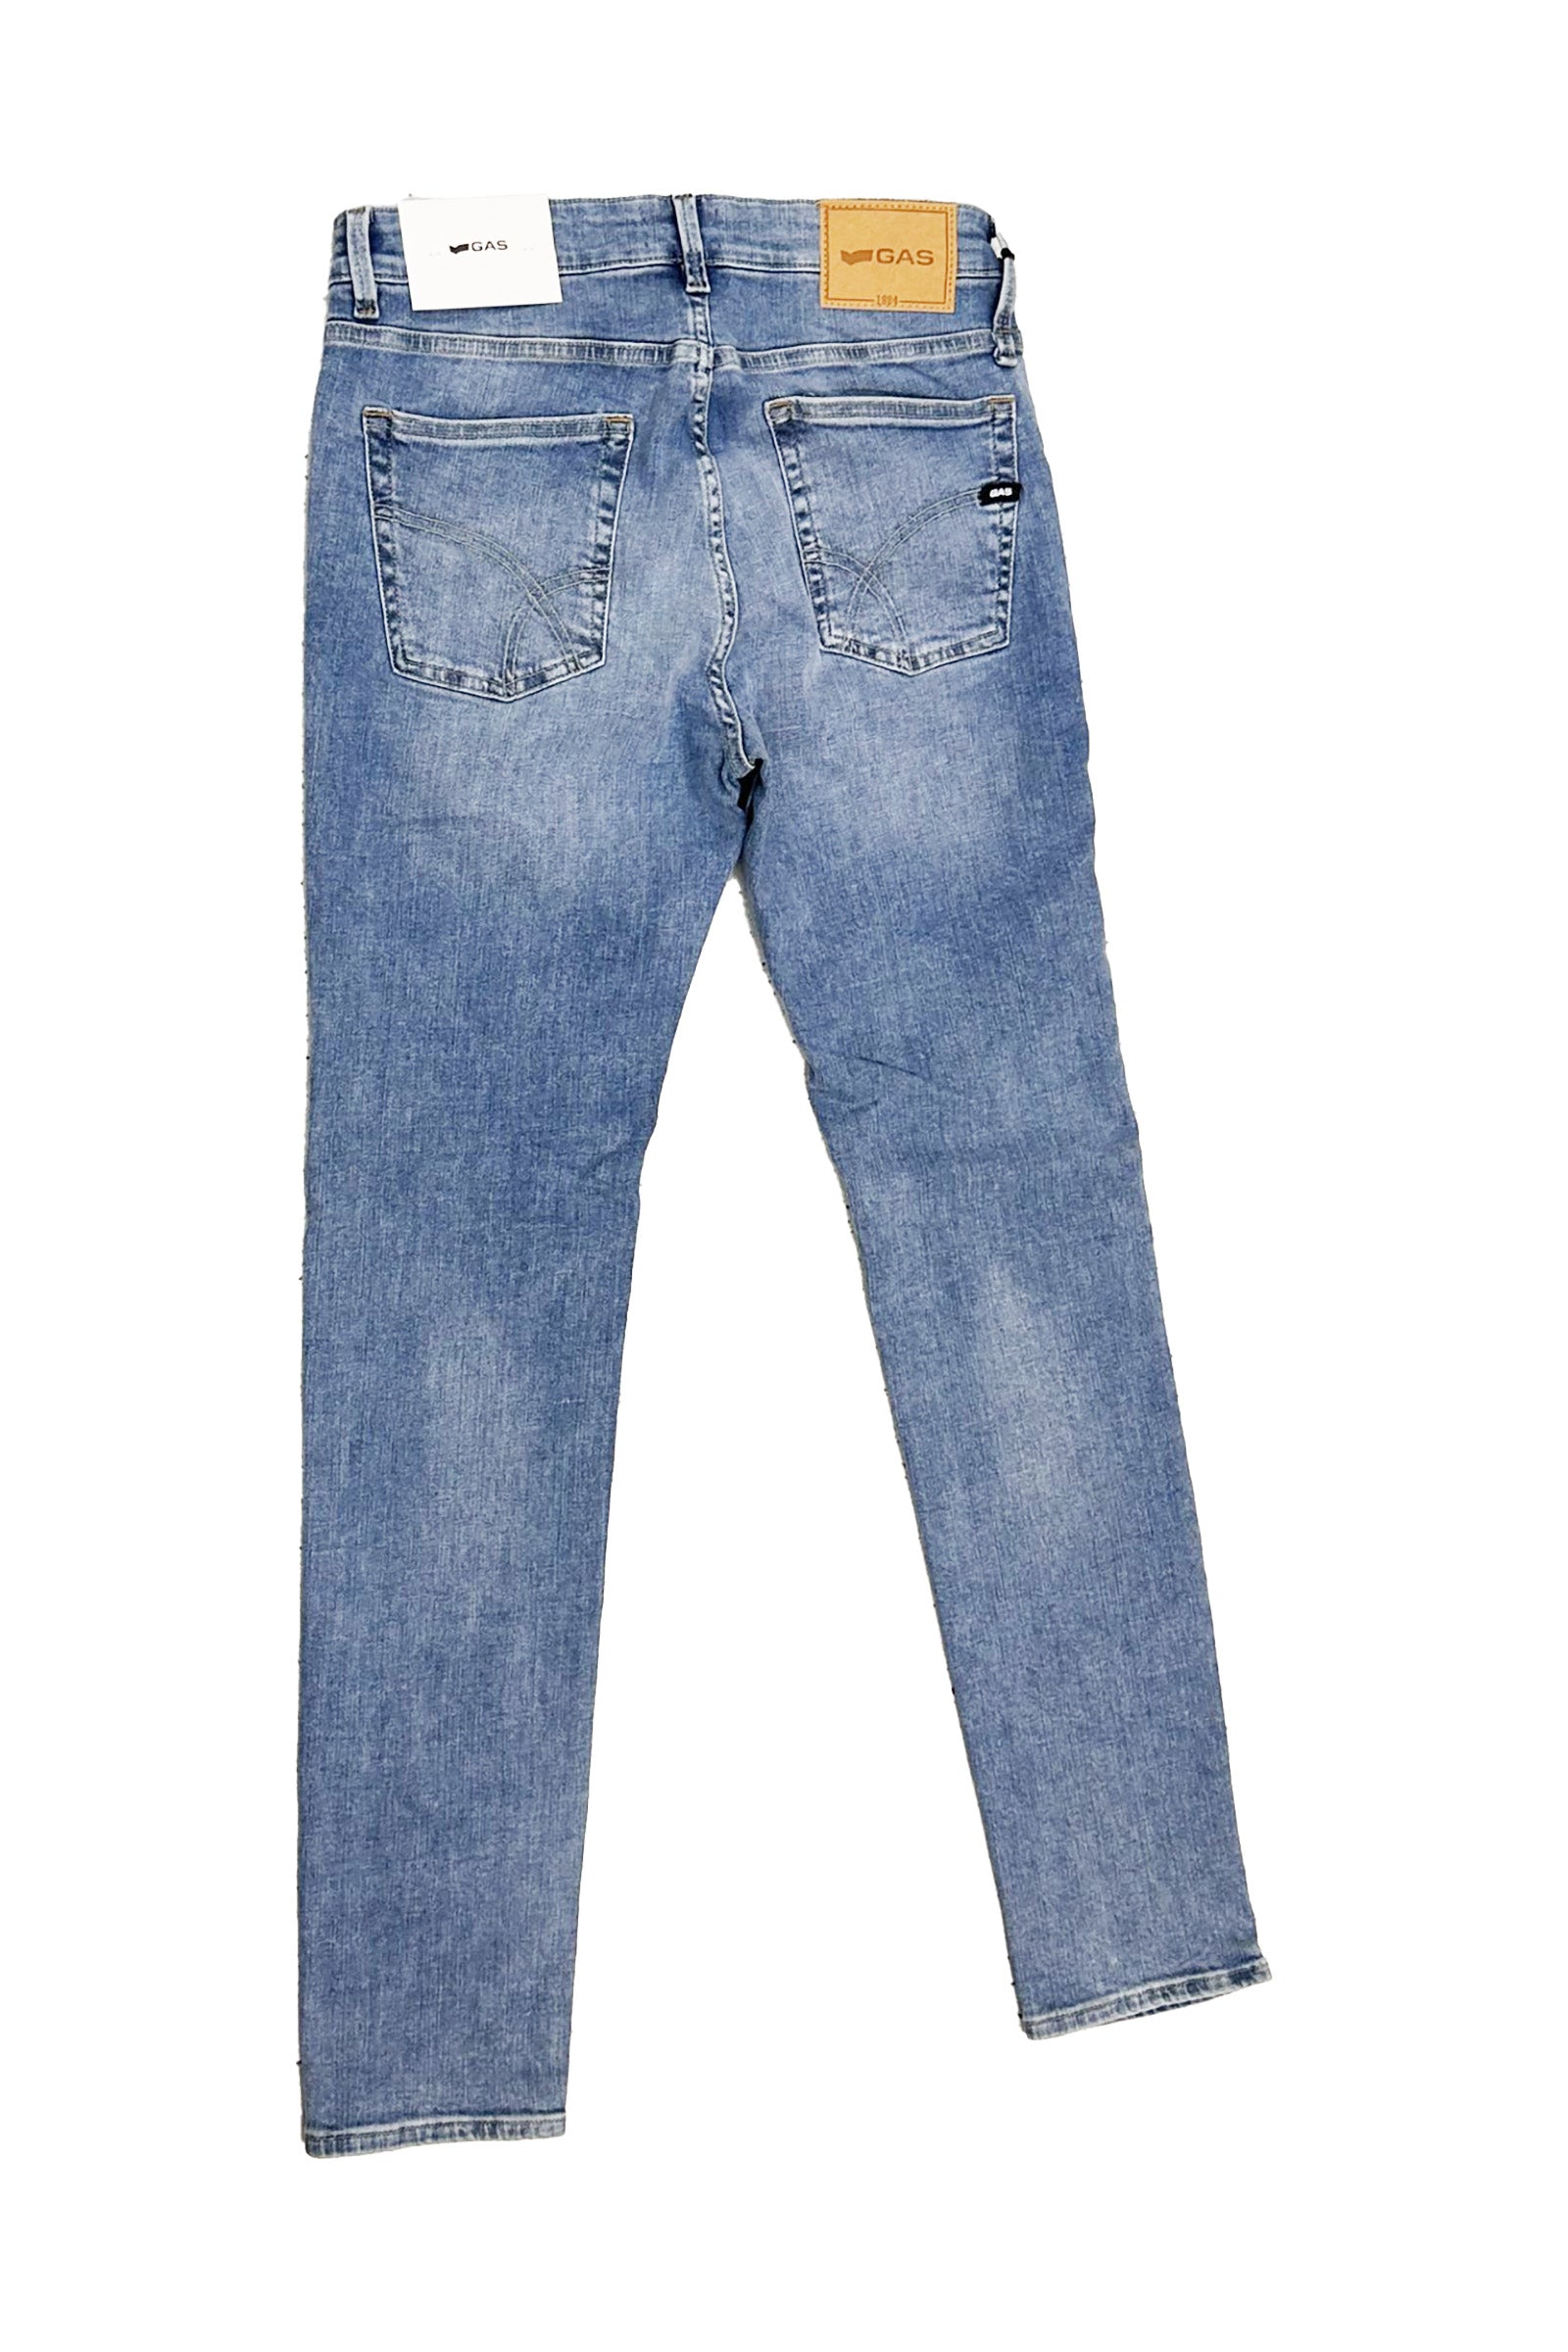 Sax Zip Rev 5 Pocket in Light Medium Jeans GAS   